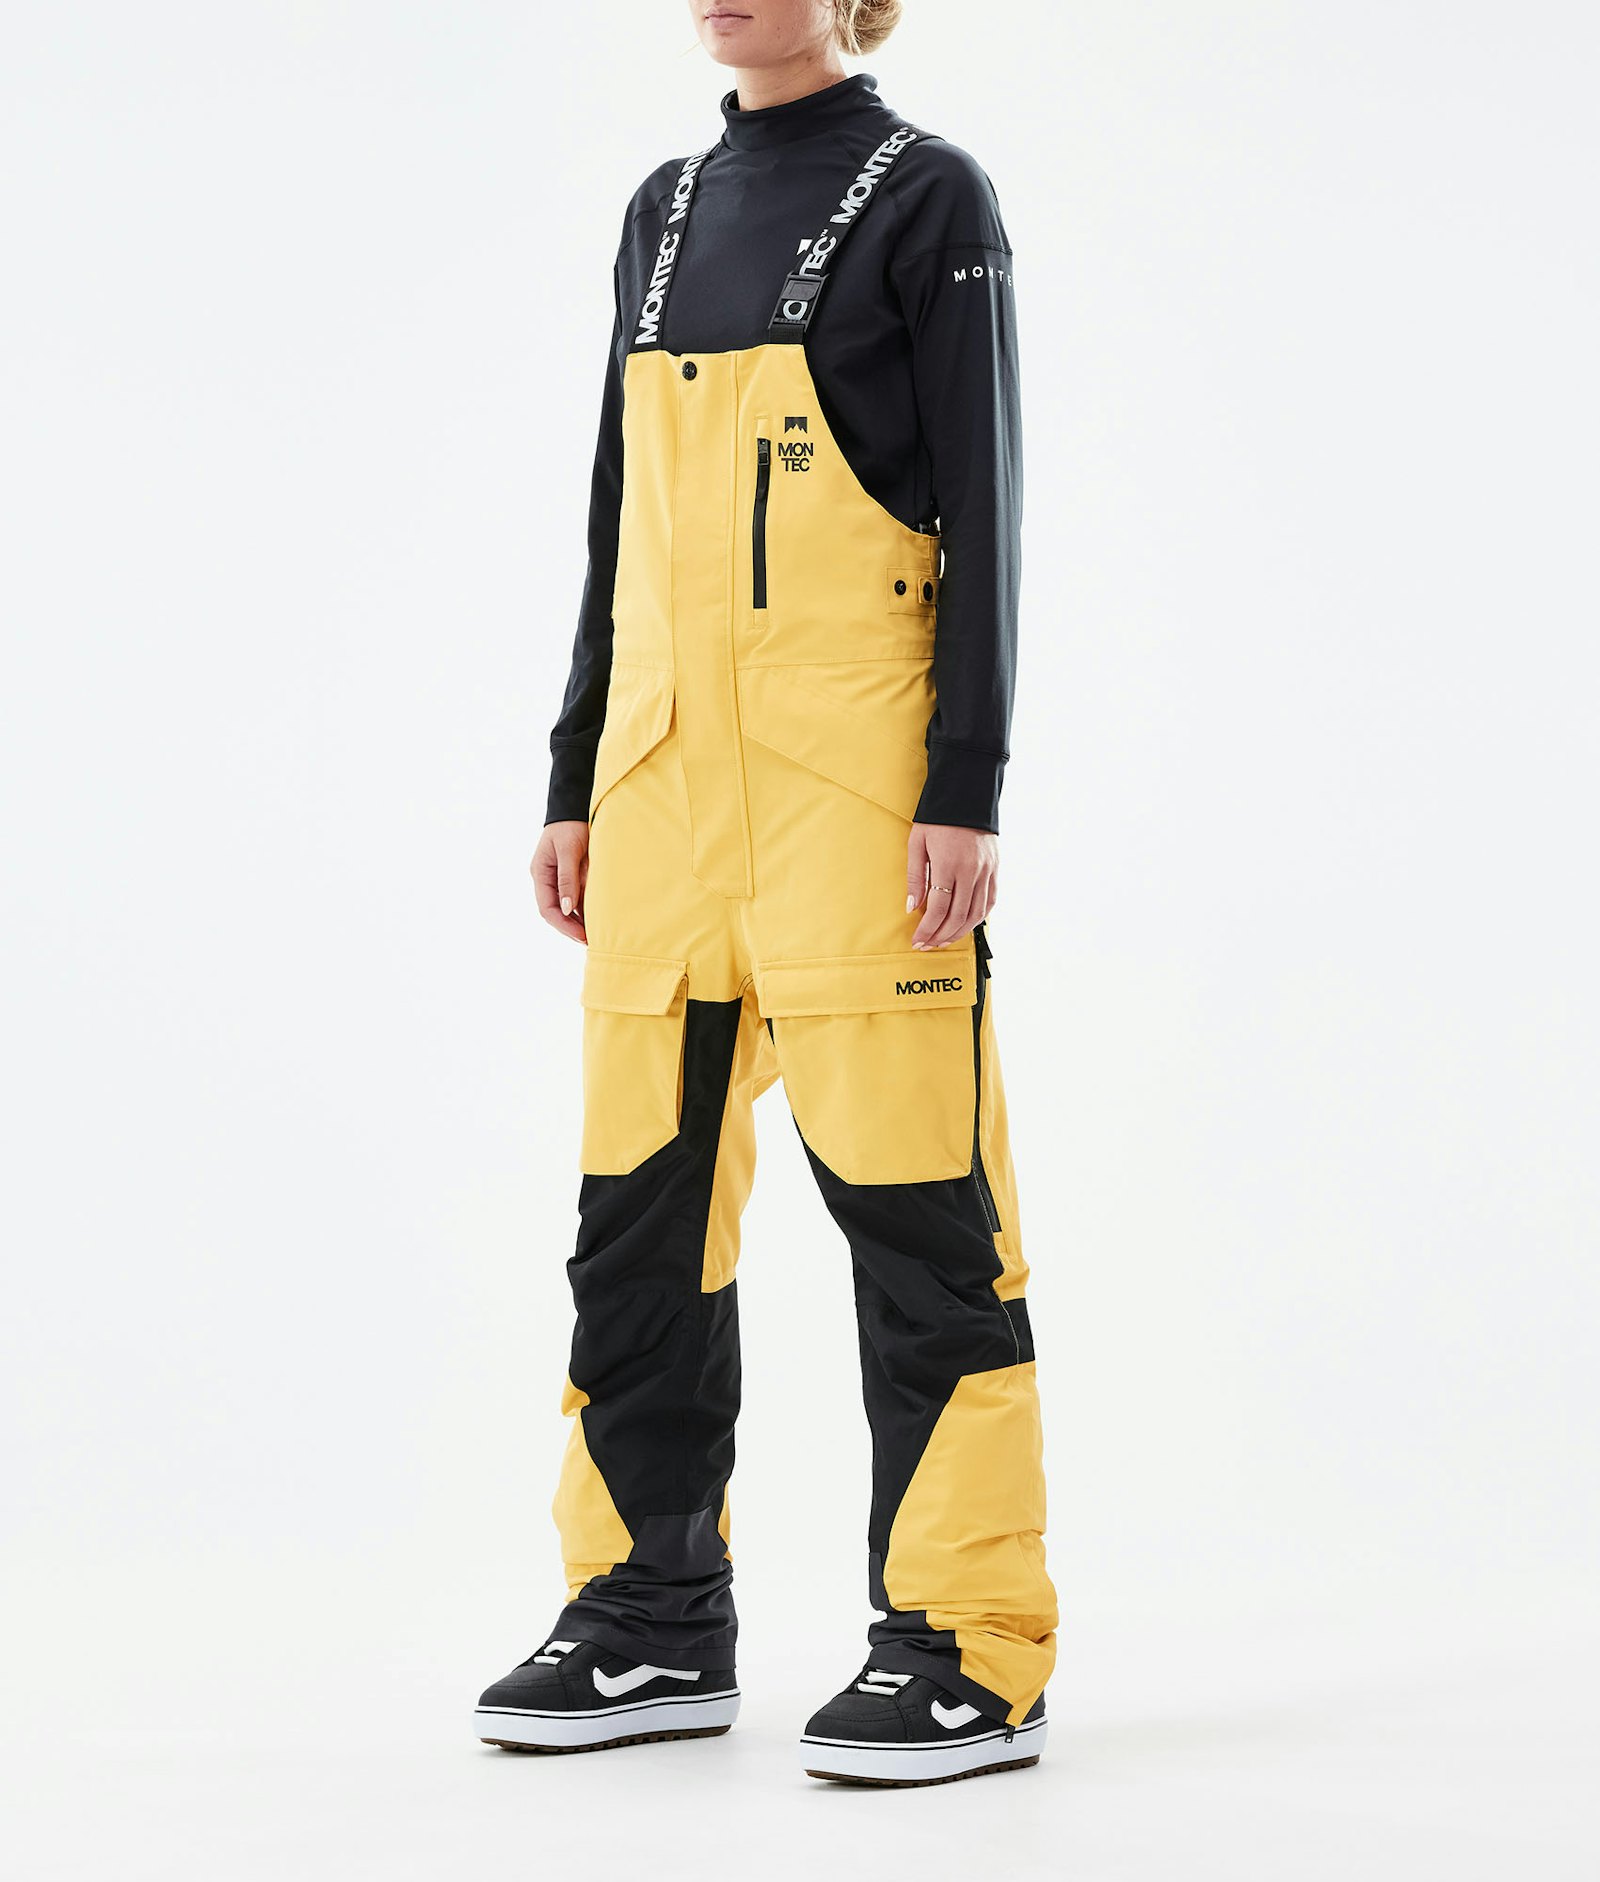 Fawk W 2021 Pantalon de Snowboard Femme Yellow/Black Renewed